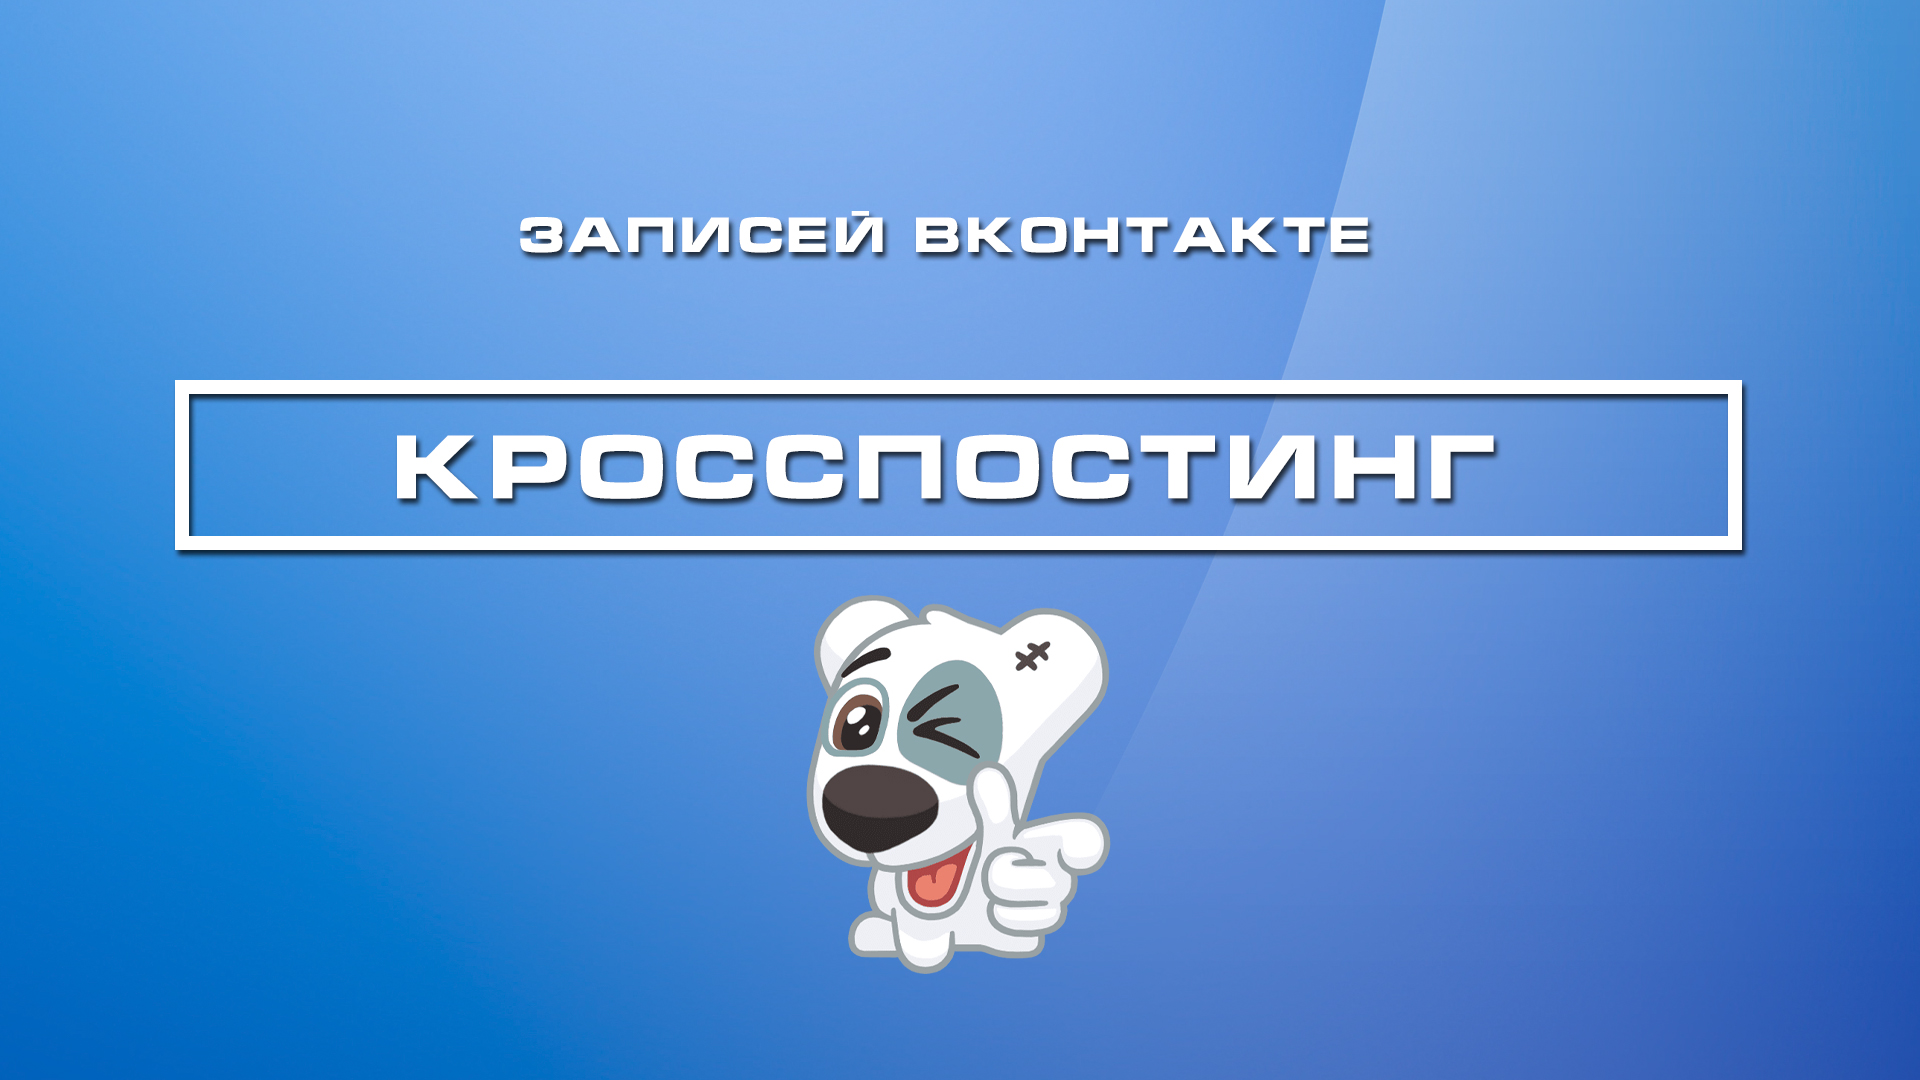 Кросспостинг записей вконтакте (код)